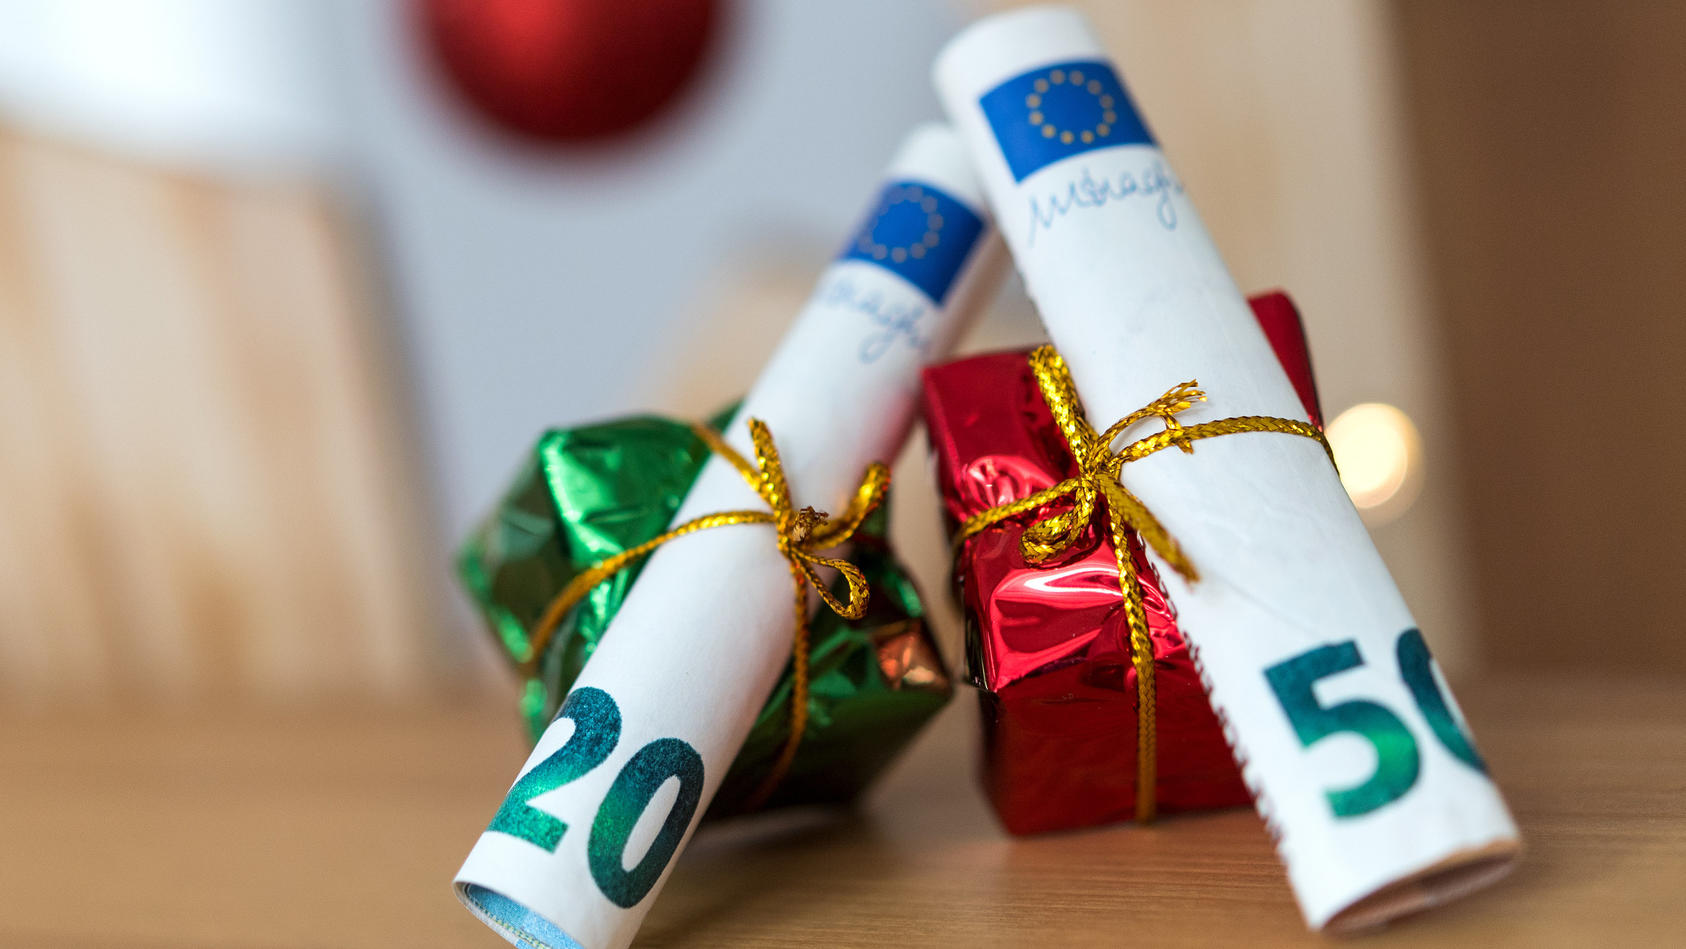 ILLUSTRATION - 04.12.2018, Sachsen, Dresden: ARCHIV - Als Geschenk verpackte 20 und 50 Euro Banknoten liegen auf einem Tisch.  Weihnachten steht vor der Tür und damit auch der Stress, die richtigen Geschenke zu finden. Noch beliebter als liebevoll au